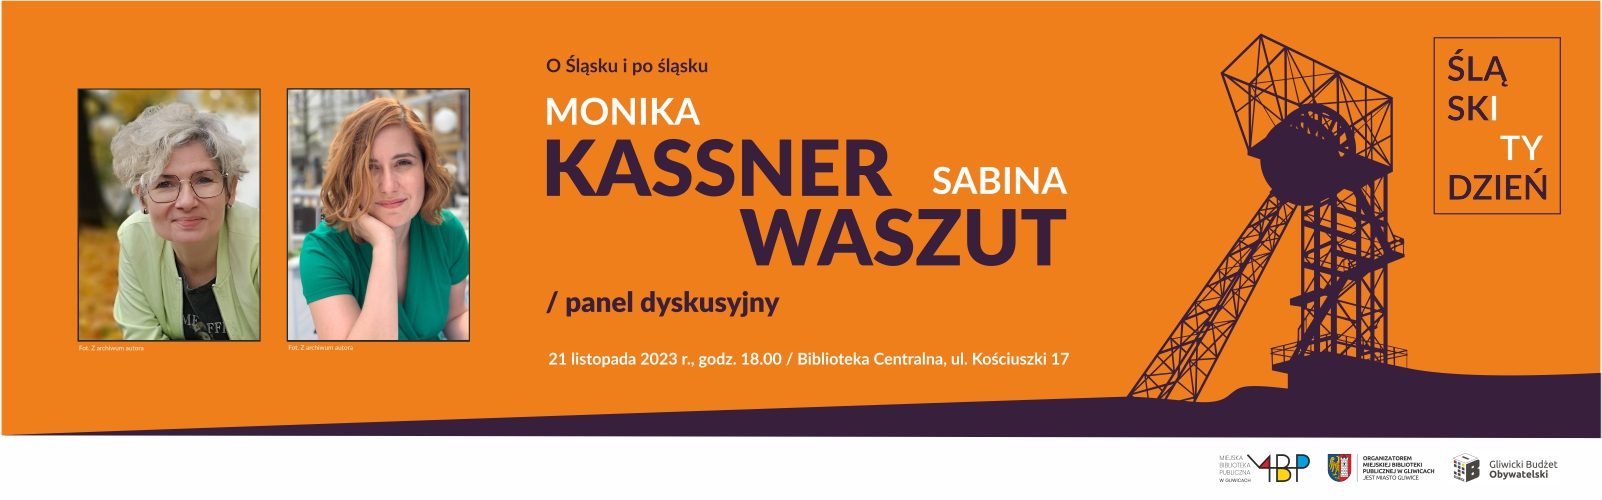 Baner z informacją o panelu dyskusyjnym w ramach Śląskiego Tygodnia